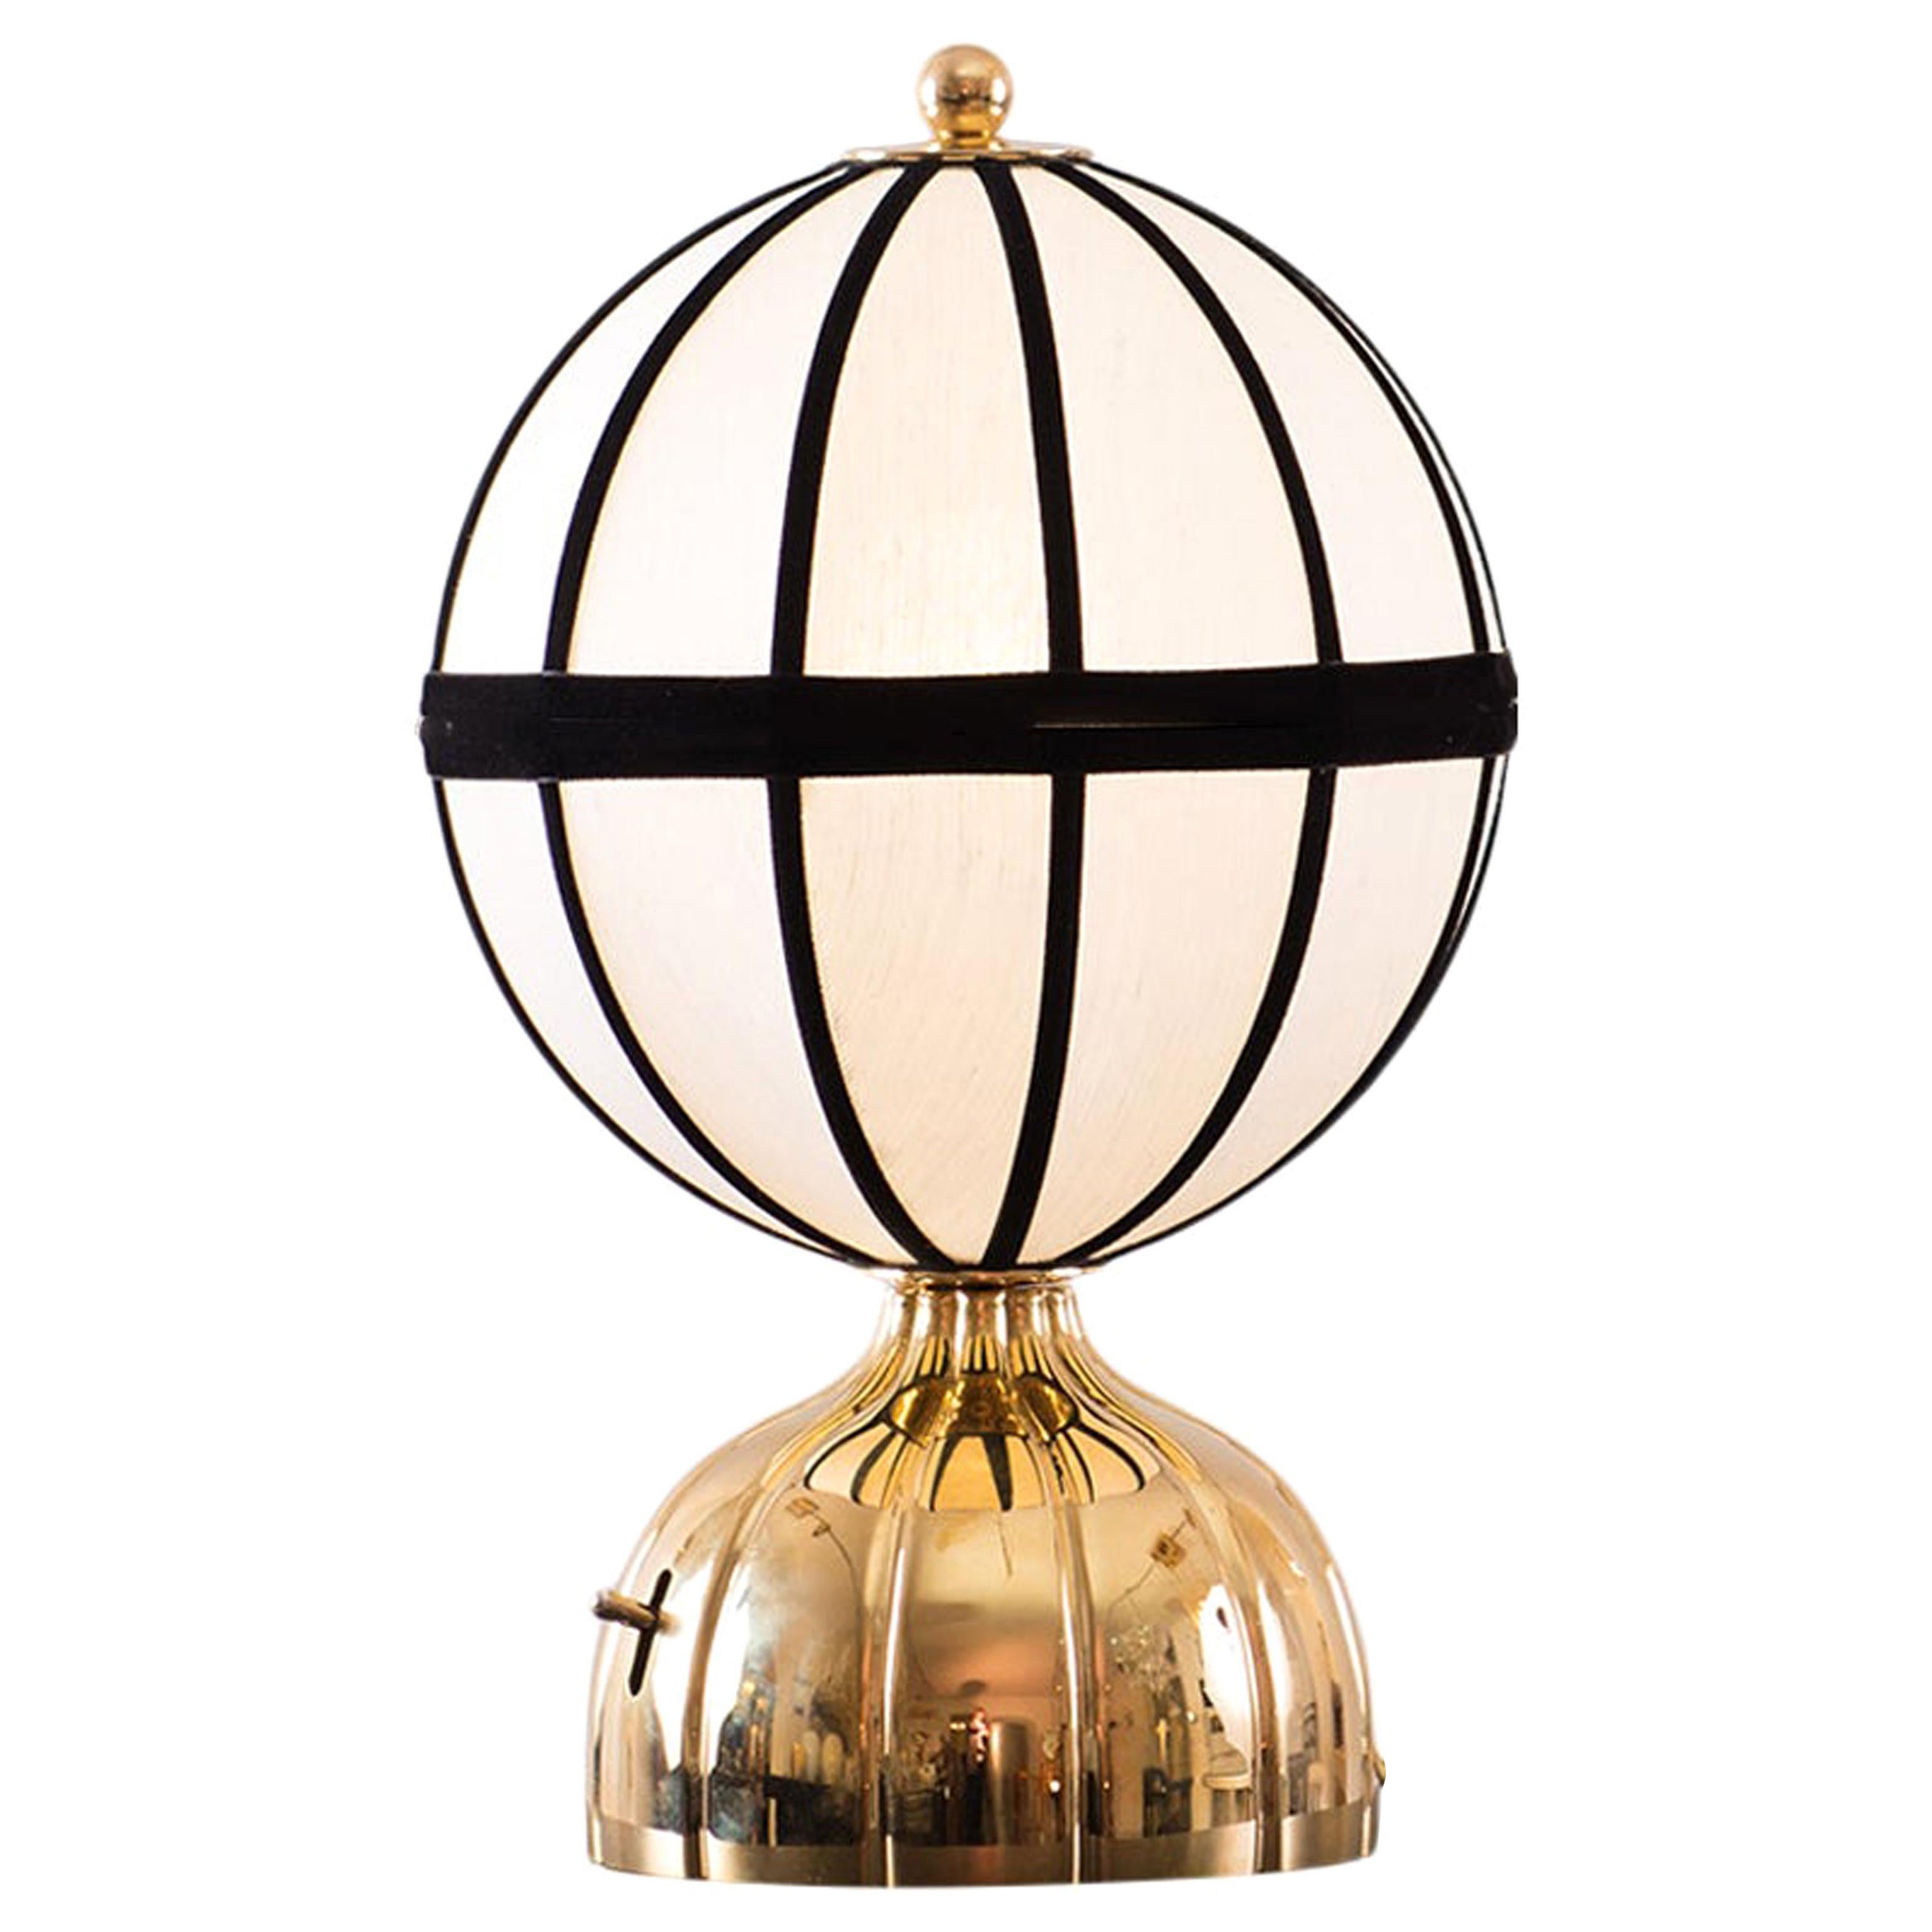 Josef Hoffmann & Josef Frank & Wiener Werkstaette Ball Table Lamp, Re-Edition